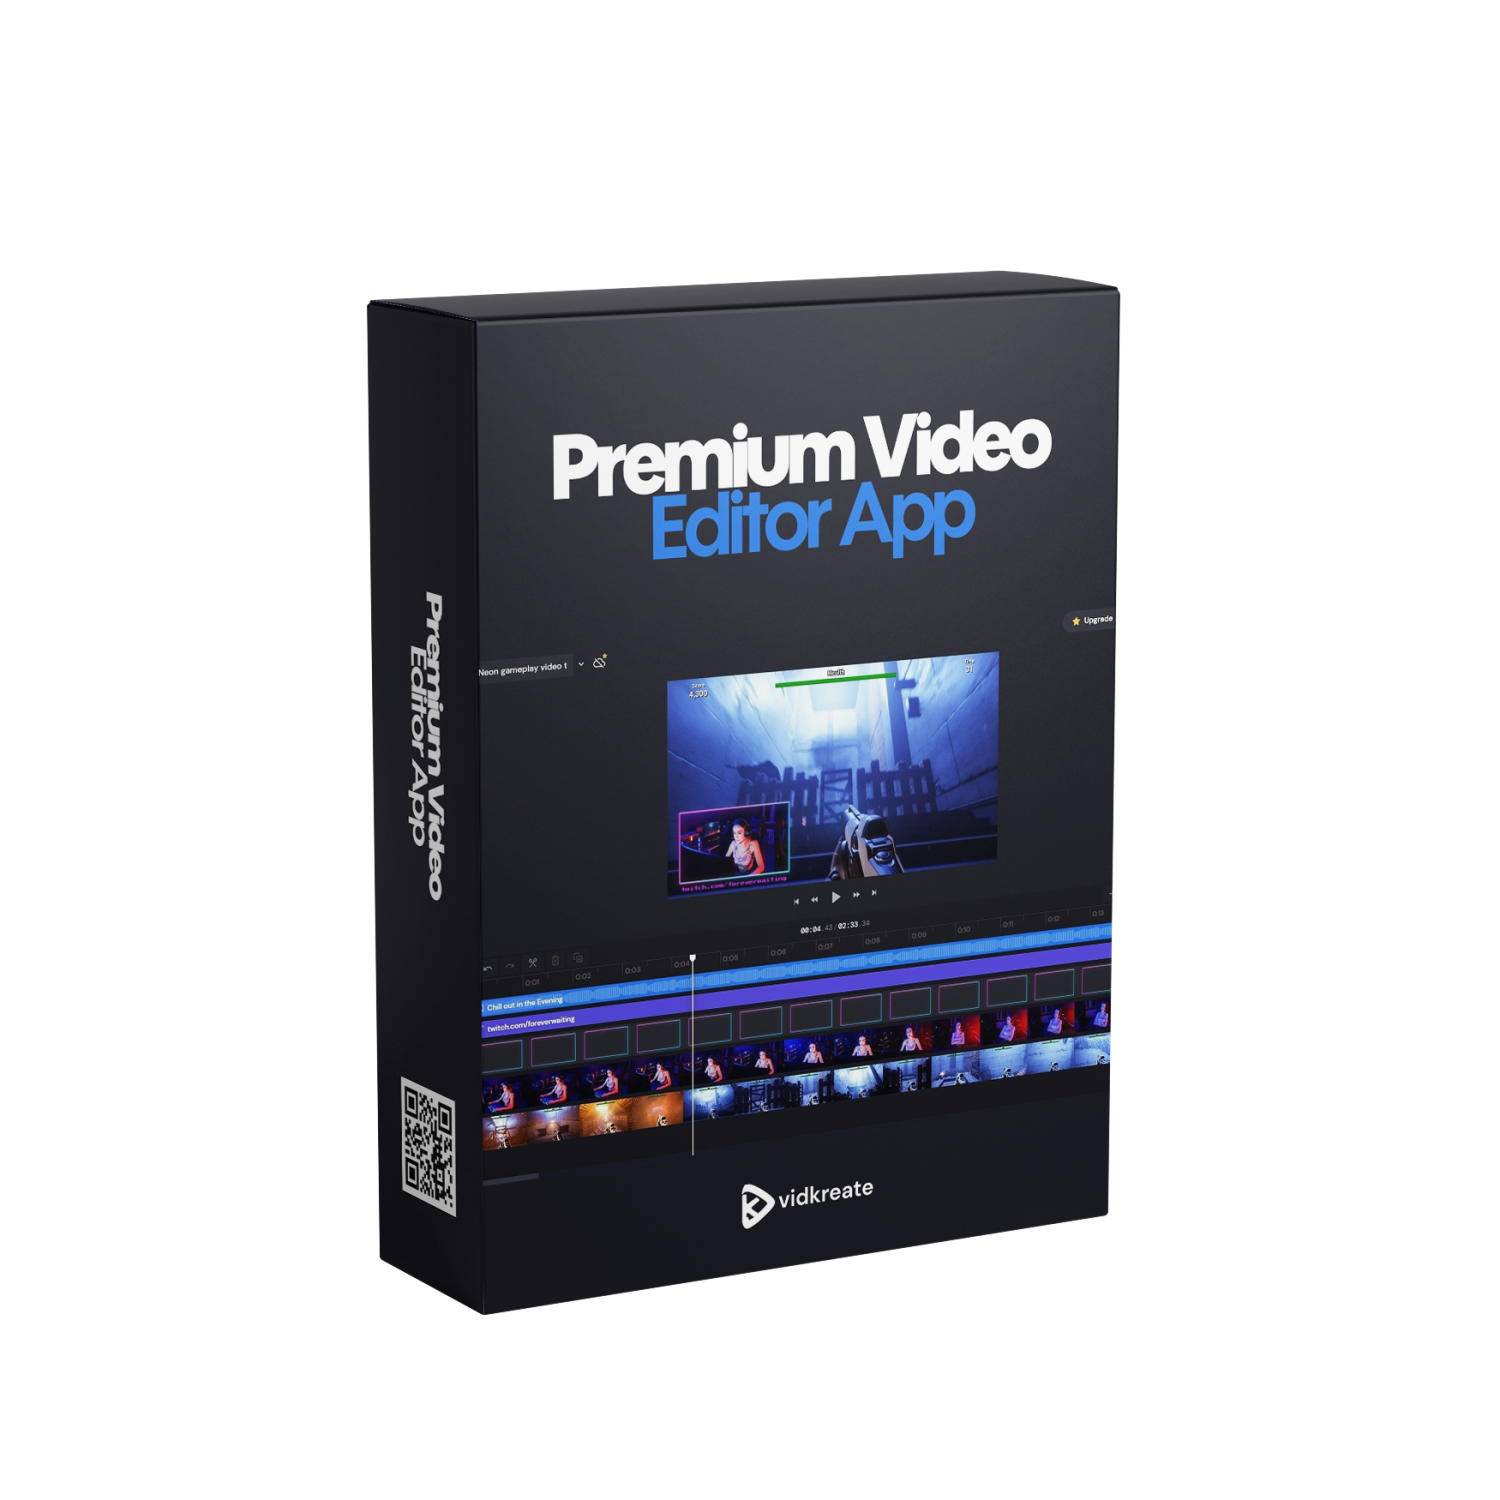 Premium Video Editor App